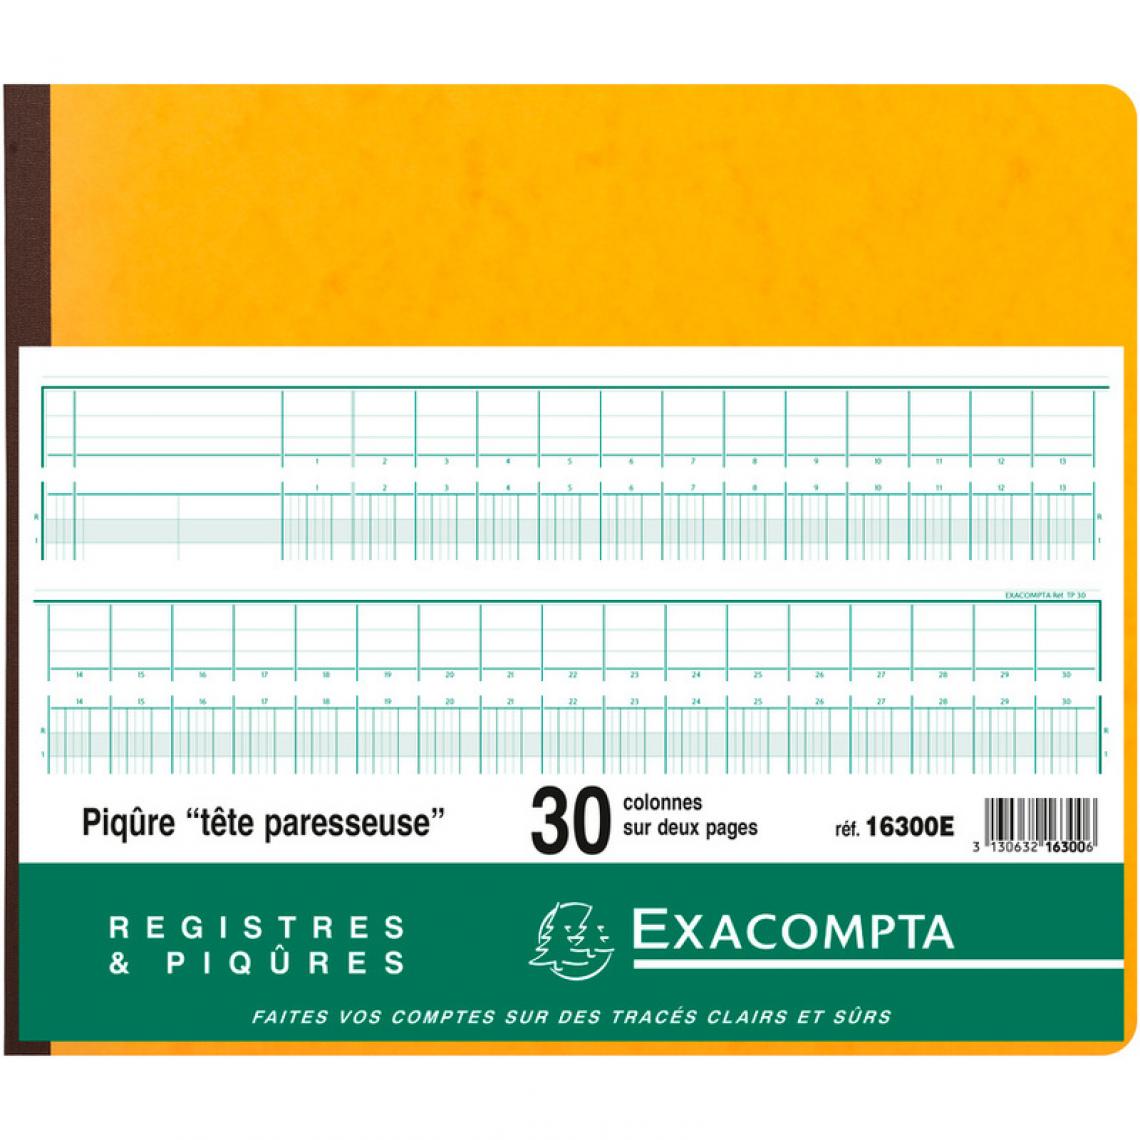 Exacompta - EXACOMPTA Piqûre tête paresseuse, 30 colonnes sur 2 pages () - Accessoires Bureau